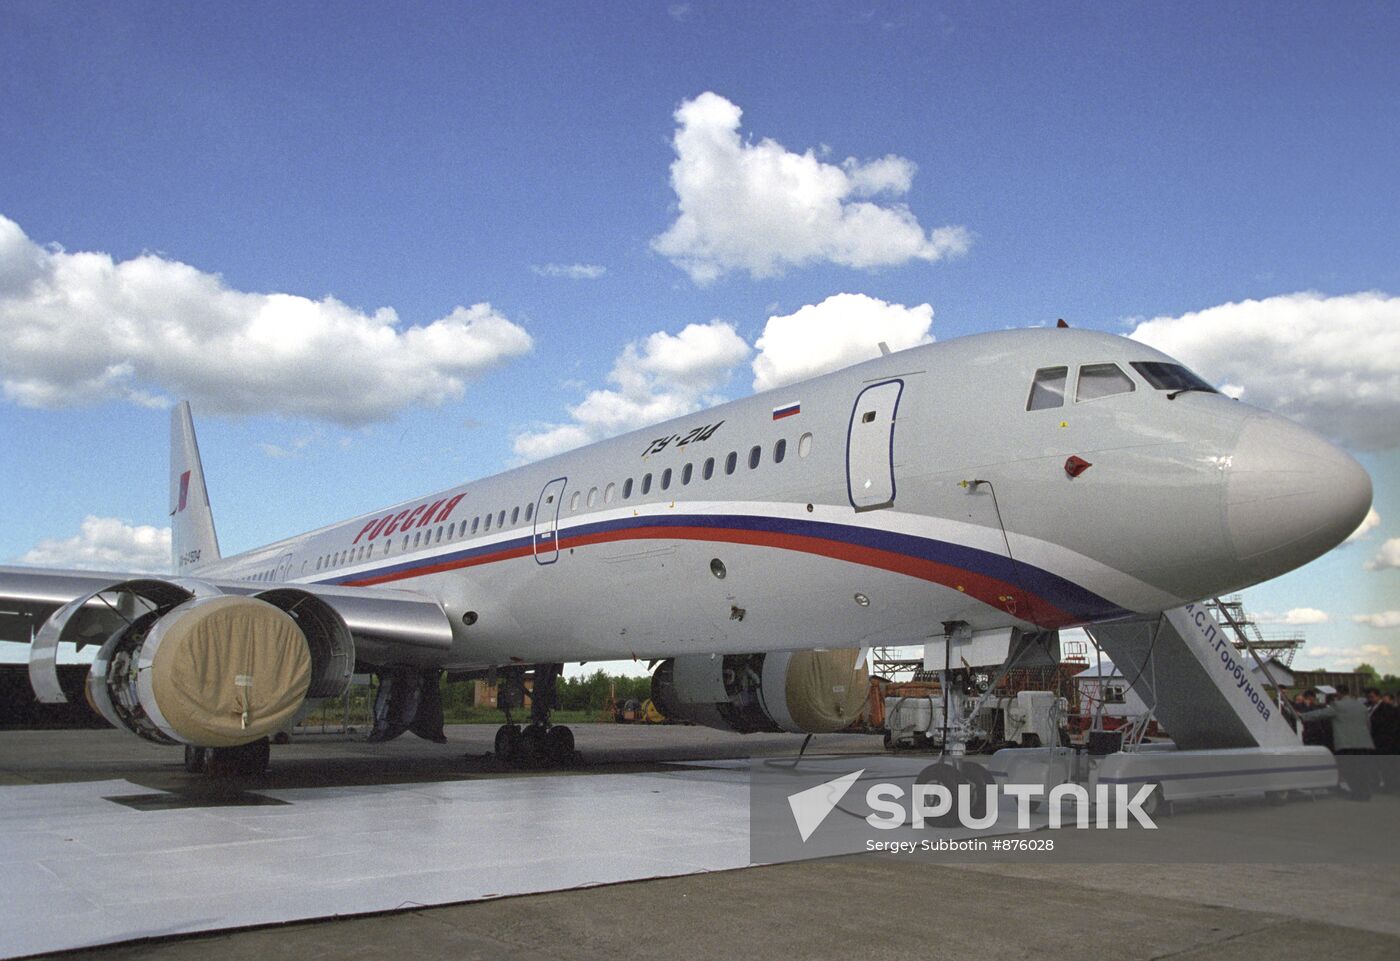 A Tupolev Tu-214 airliner